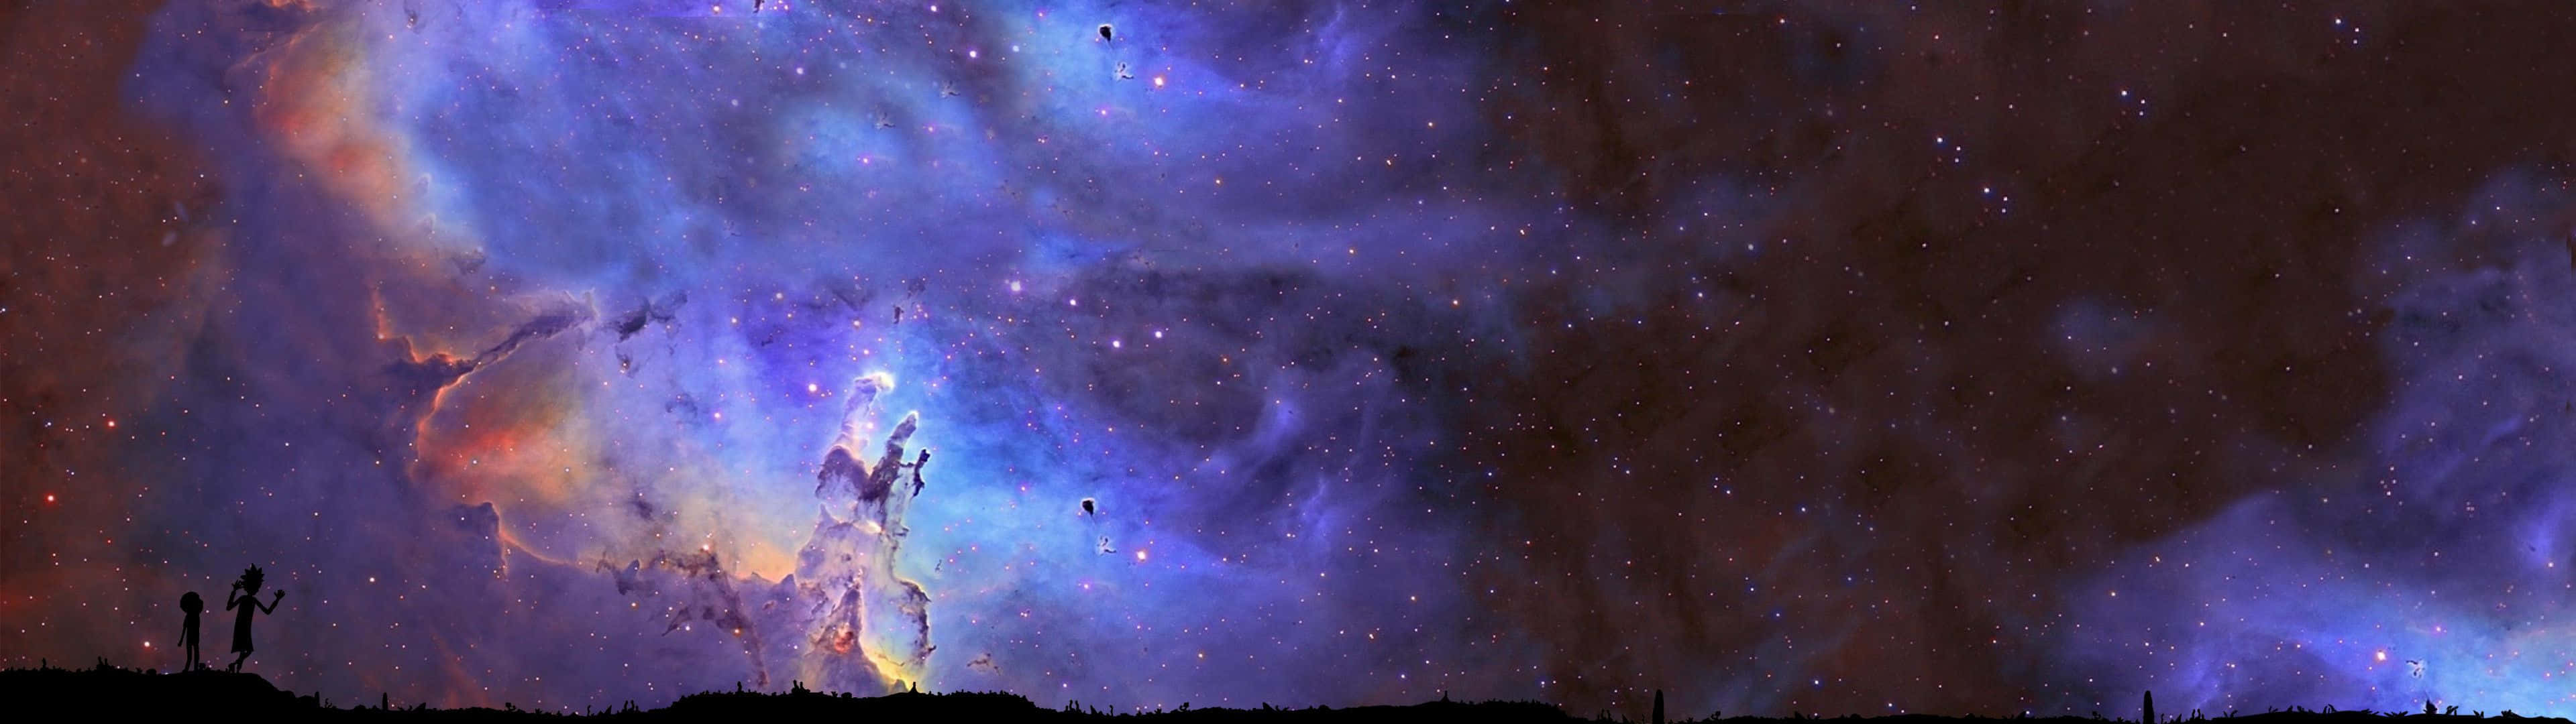 Enhypnotiserande Bild Av Galaxer I En Overklig Miljö. Wallpaper